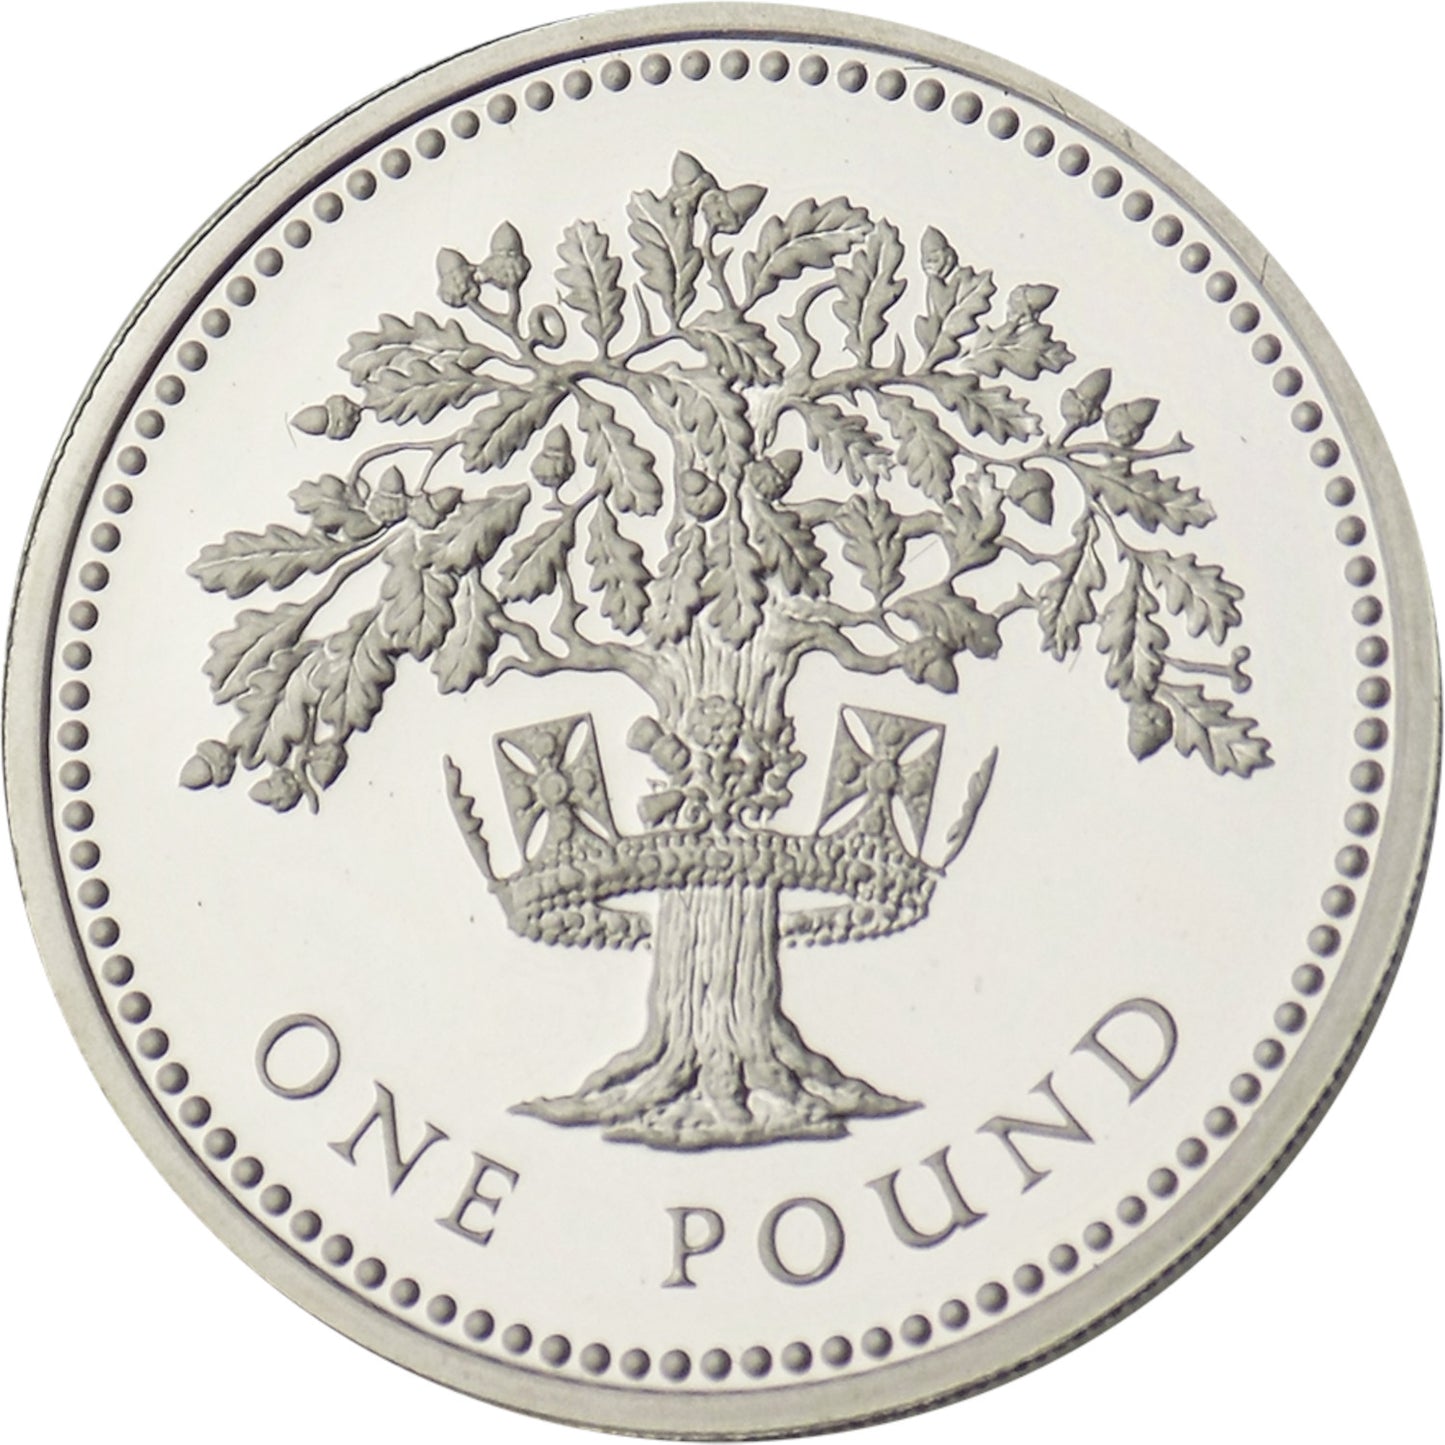 1 Pound - Elizabeth II English Oak Silver Piedfort